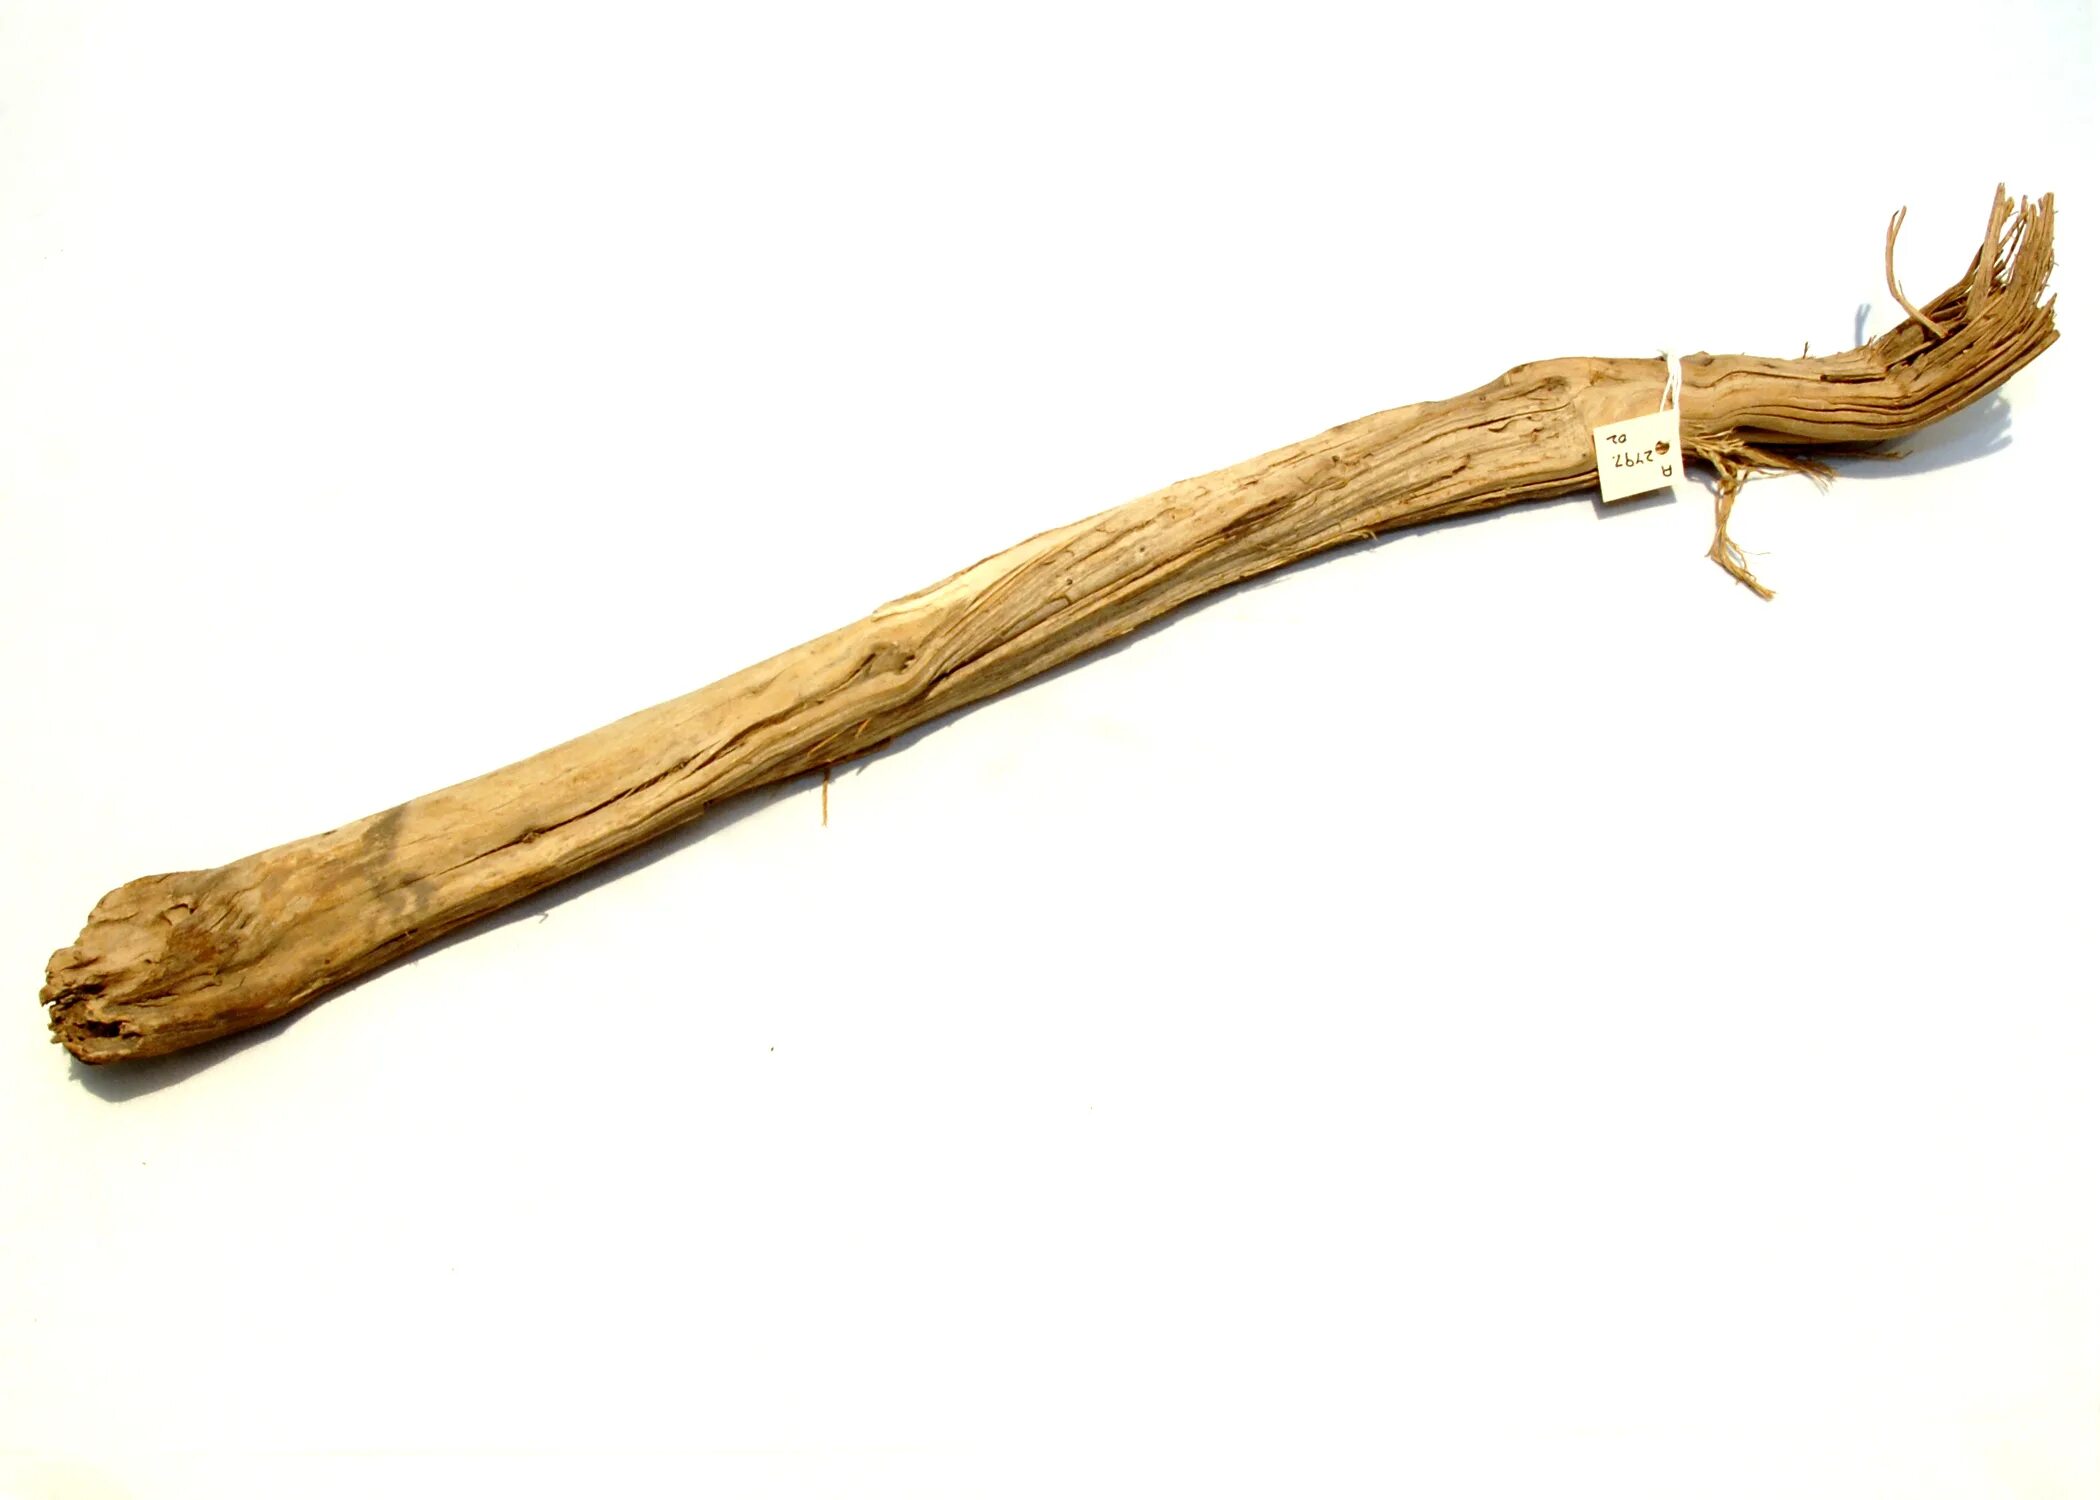 Палка деревянная. Старая деревянная палка. Палка деревянная от дерева. Ребенок с палкой. A wooden stick